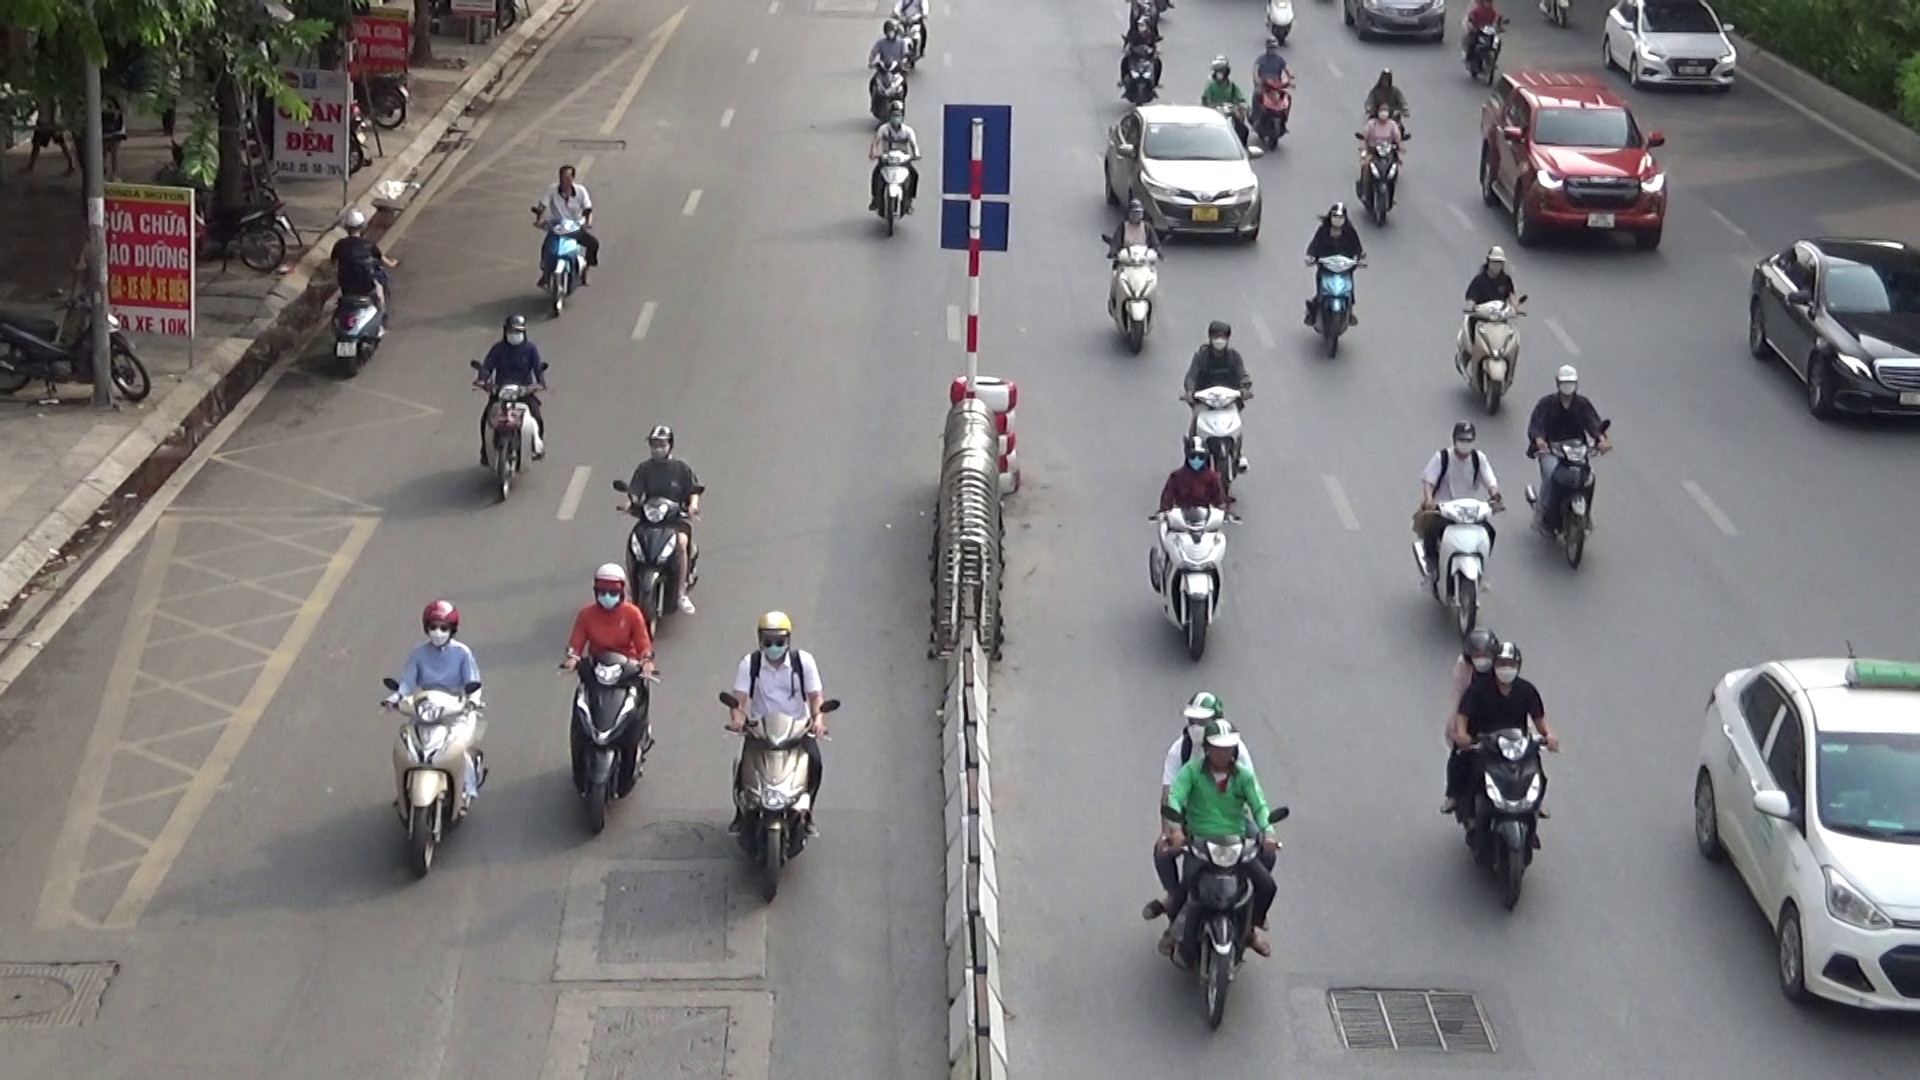 Hà Nội: Sẽ xử lý nghiêm các trường hợp cố tình vi phạm xe đi sai làn trên đường Nguyễn Trãi